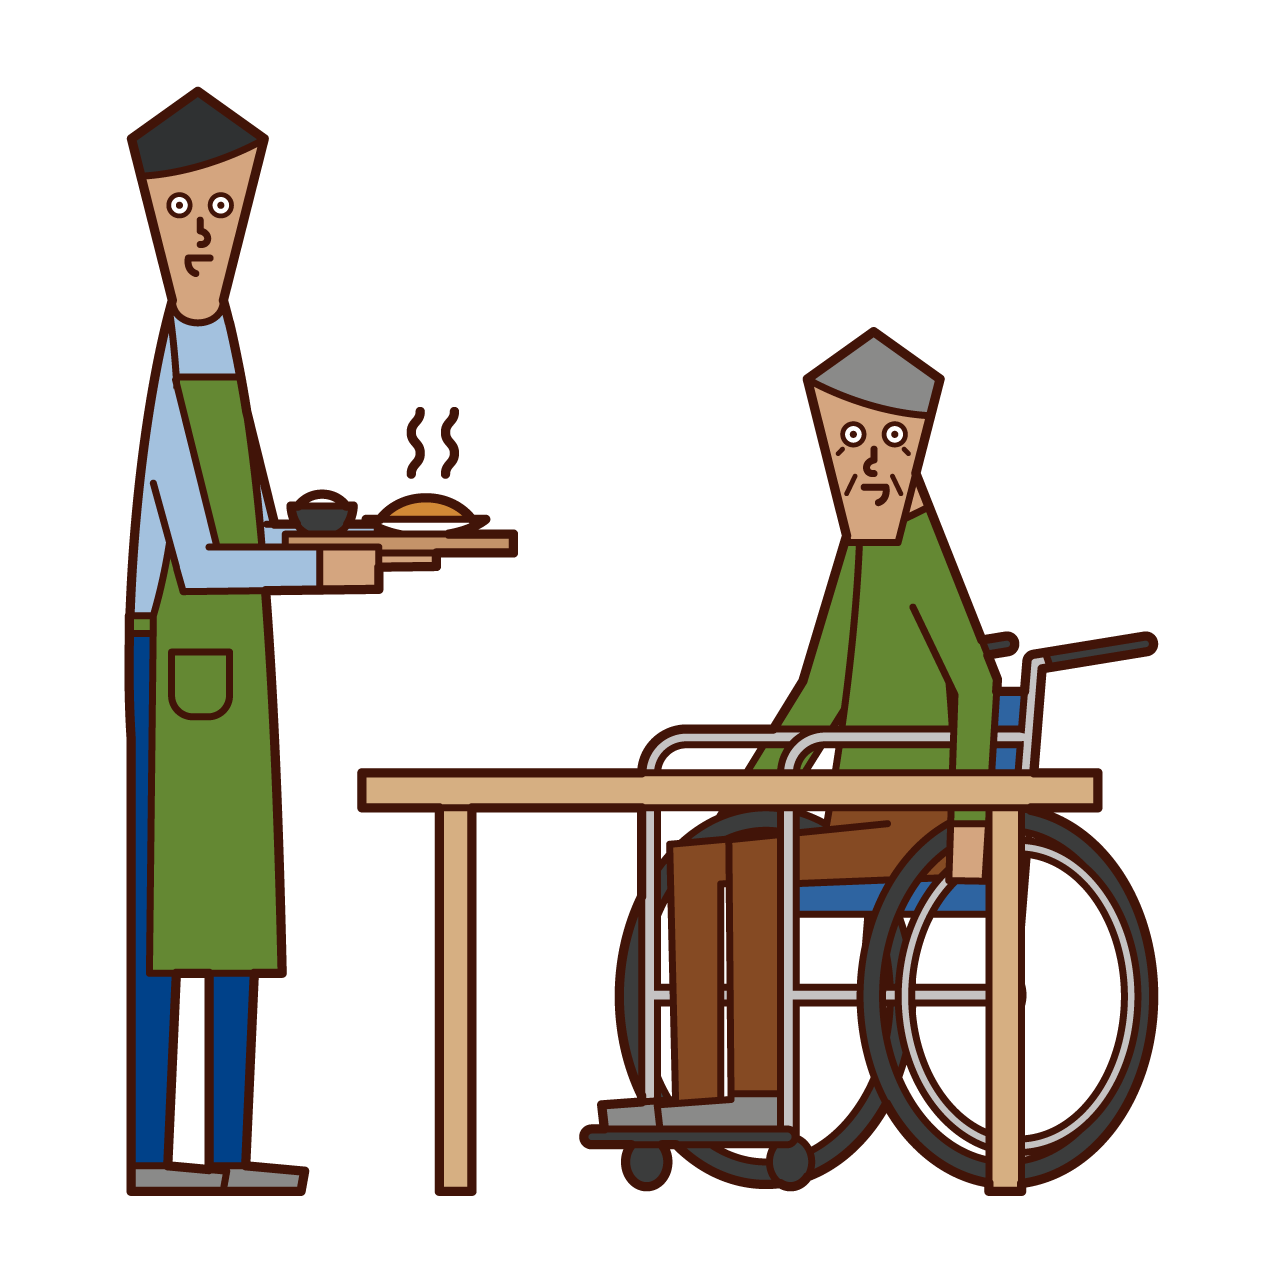 식사를 준비하는 간병인과 국내 도우미 (남성)의 그림